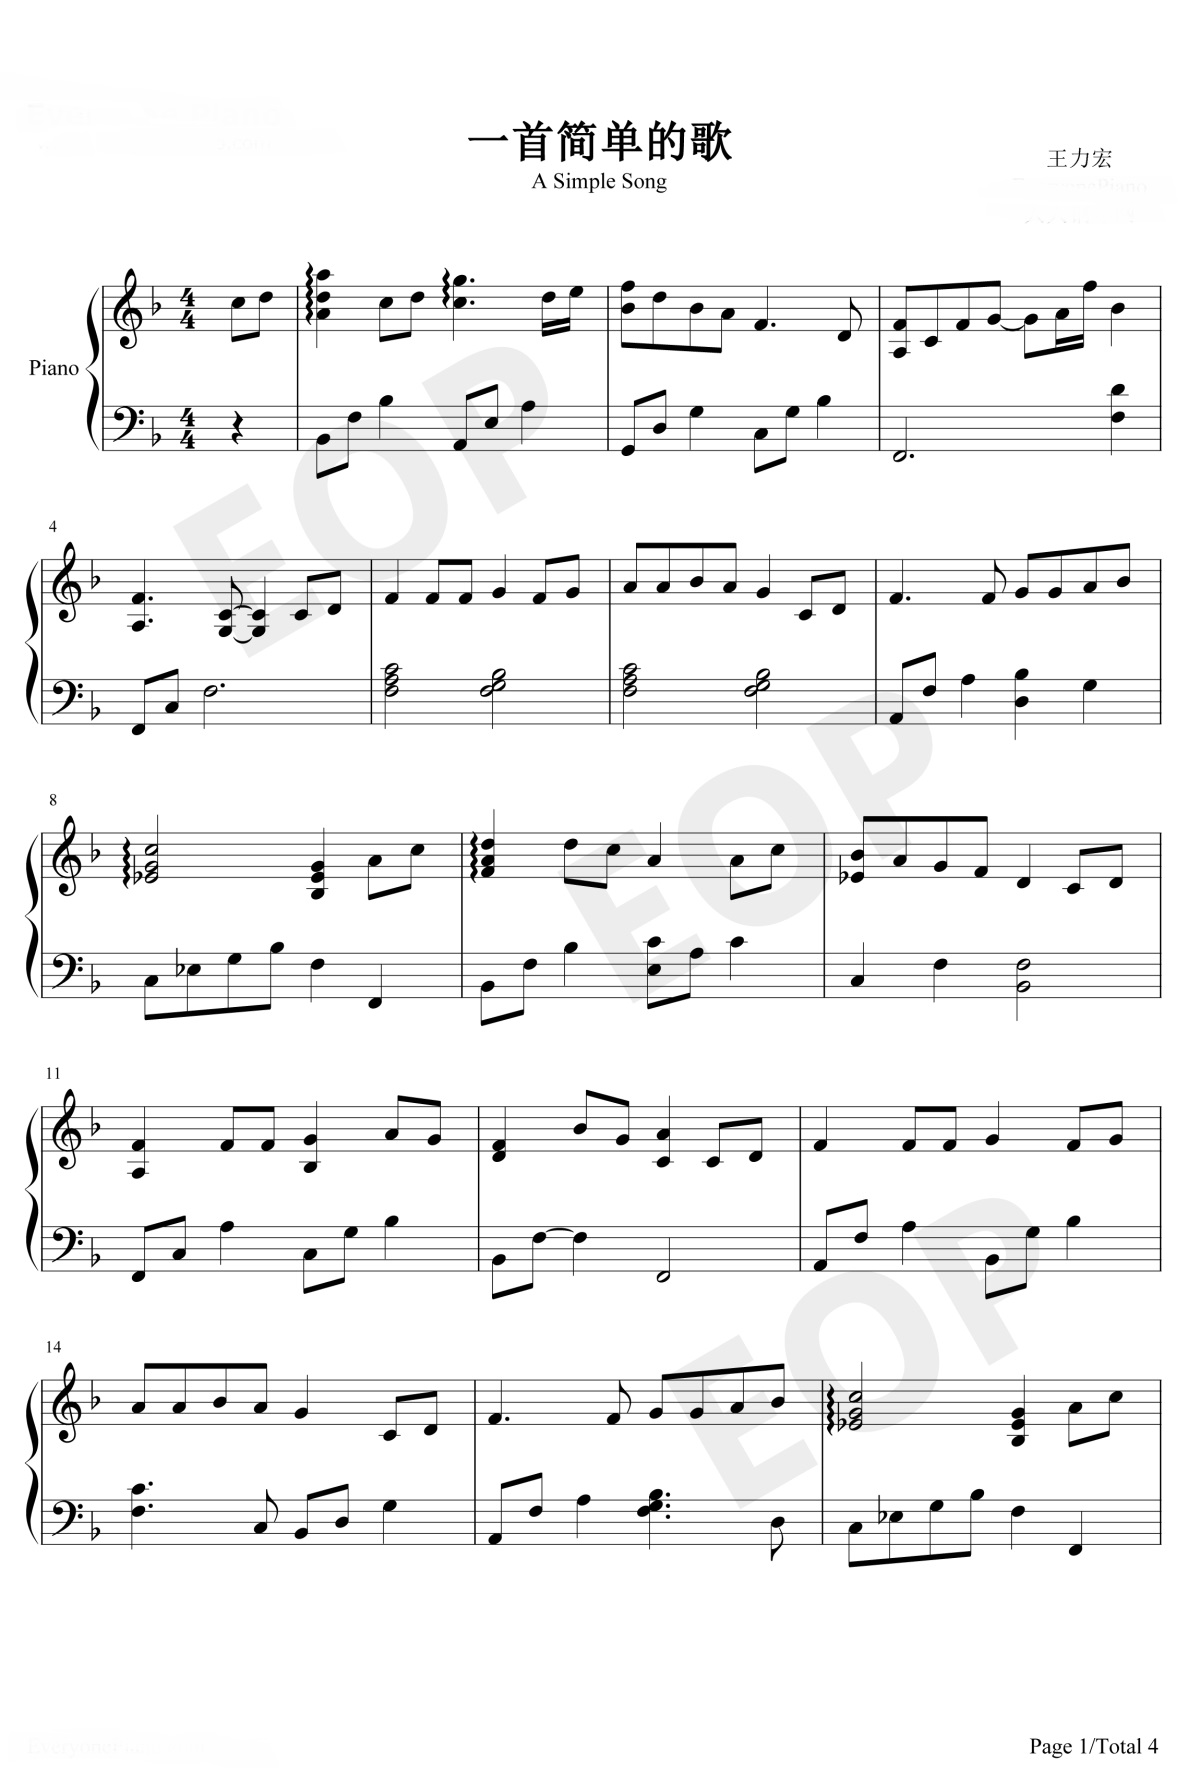 《一首简单的歌》的钢琴谱钢琴曲谱 - 王力宏